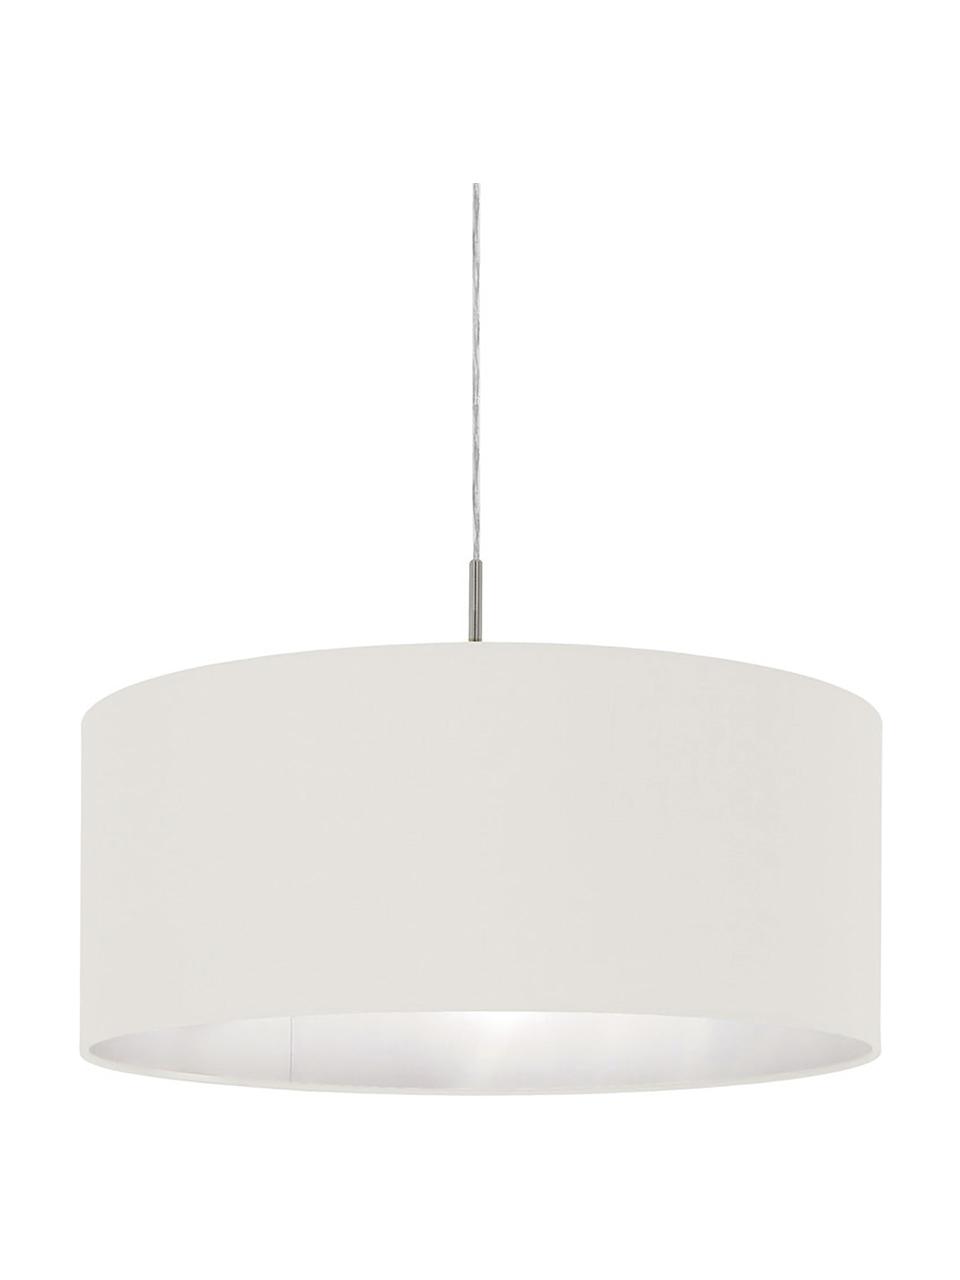 Lámpara de techo Parry, Anclaje: metal niquelado, Pantalla: tela, Cable: plástico, Plateado, blanco, Ø 53 x Al 25 cm